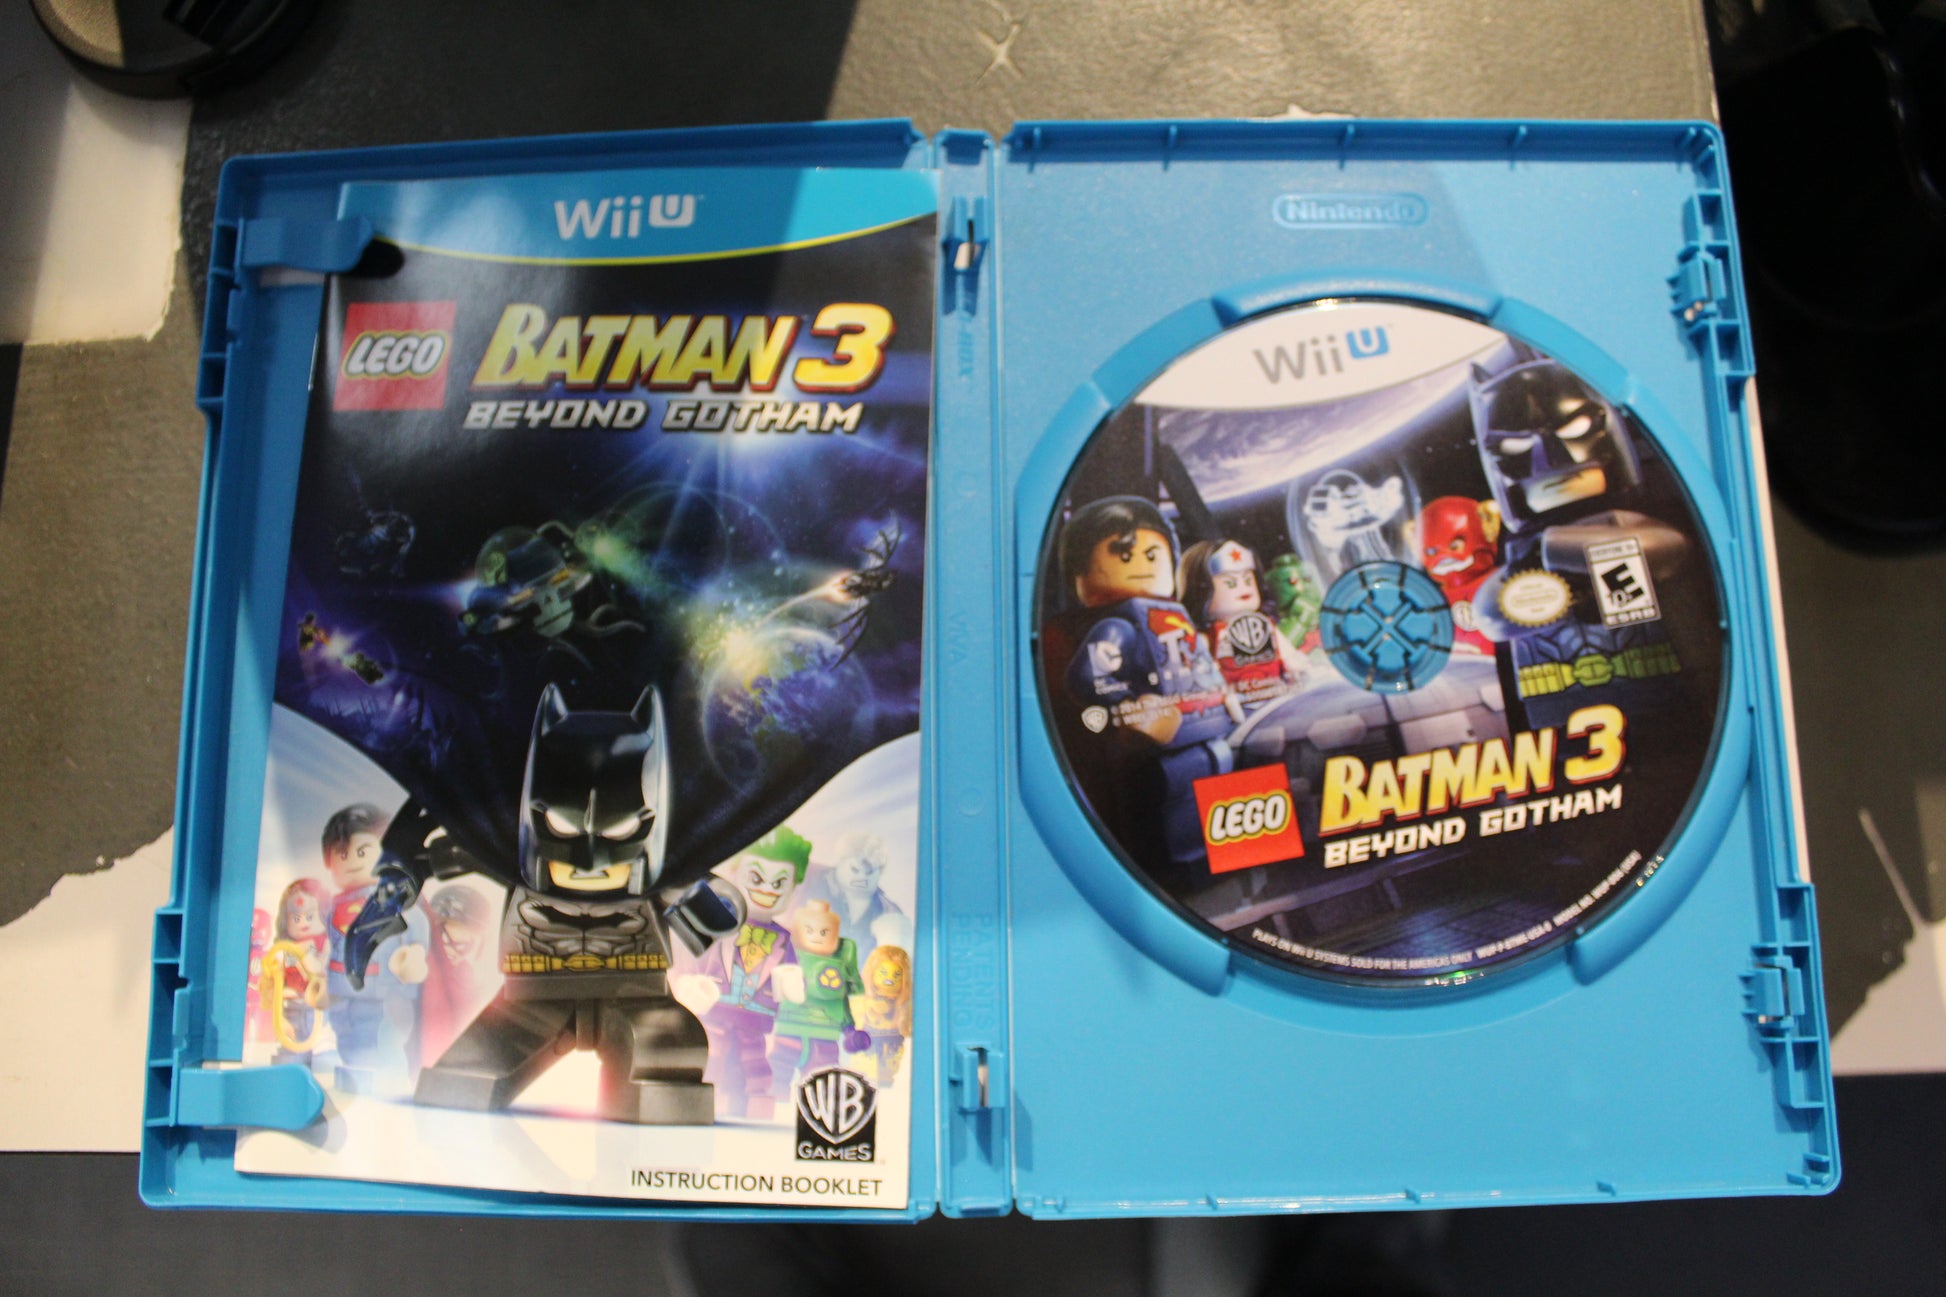 LEGO Batman 3: Beyond Gotham - Wii U